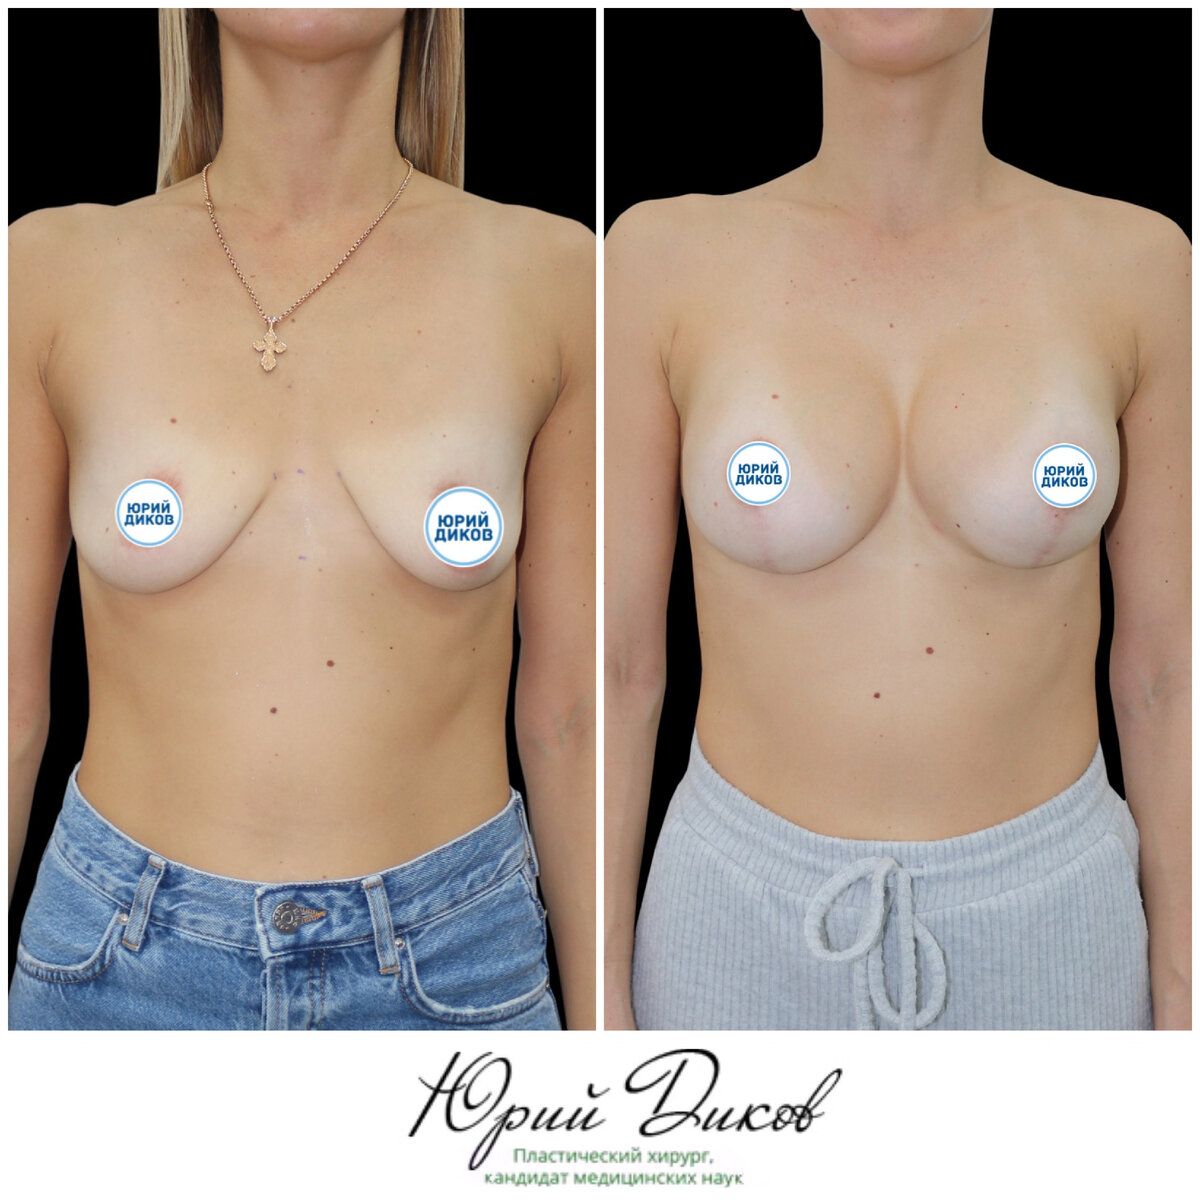 импланты для груди третьего размера фото 58